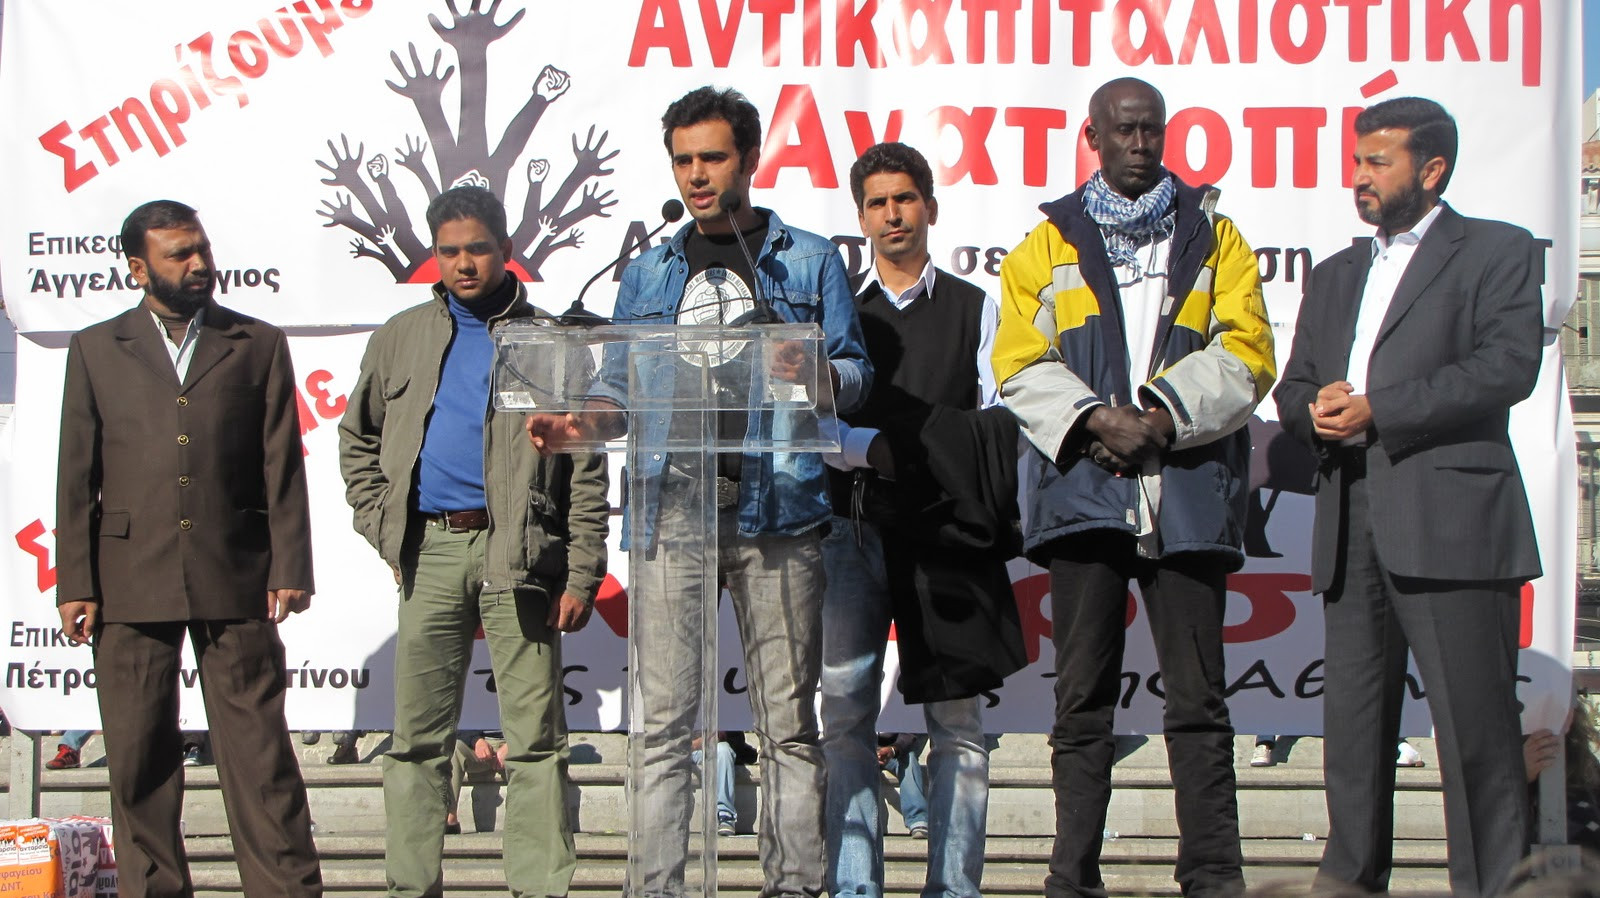 Πορεία της «Ανταρσίας στις γειτονιές της Αθήνας» και της «Αντικαπιταλιστικής Ανατροπής»